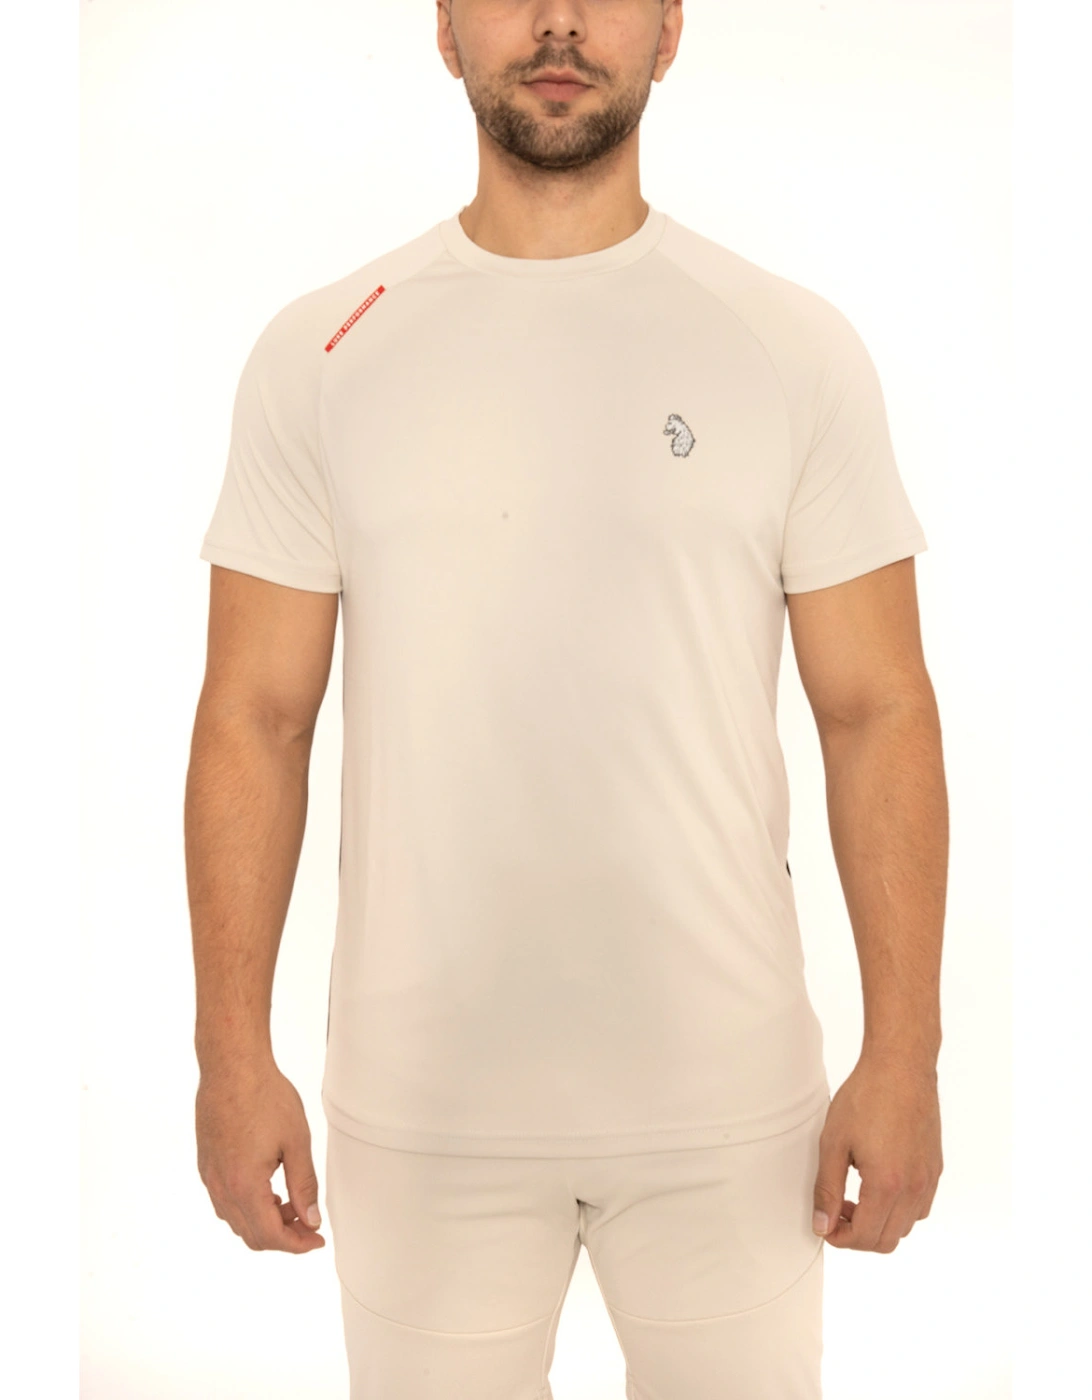 Luke Sport Mens Crunch Perfromance Jersey T-Shirt (Oyster), 8 of 7